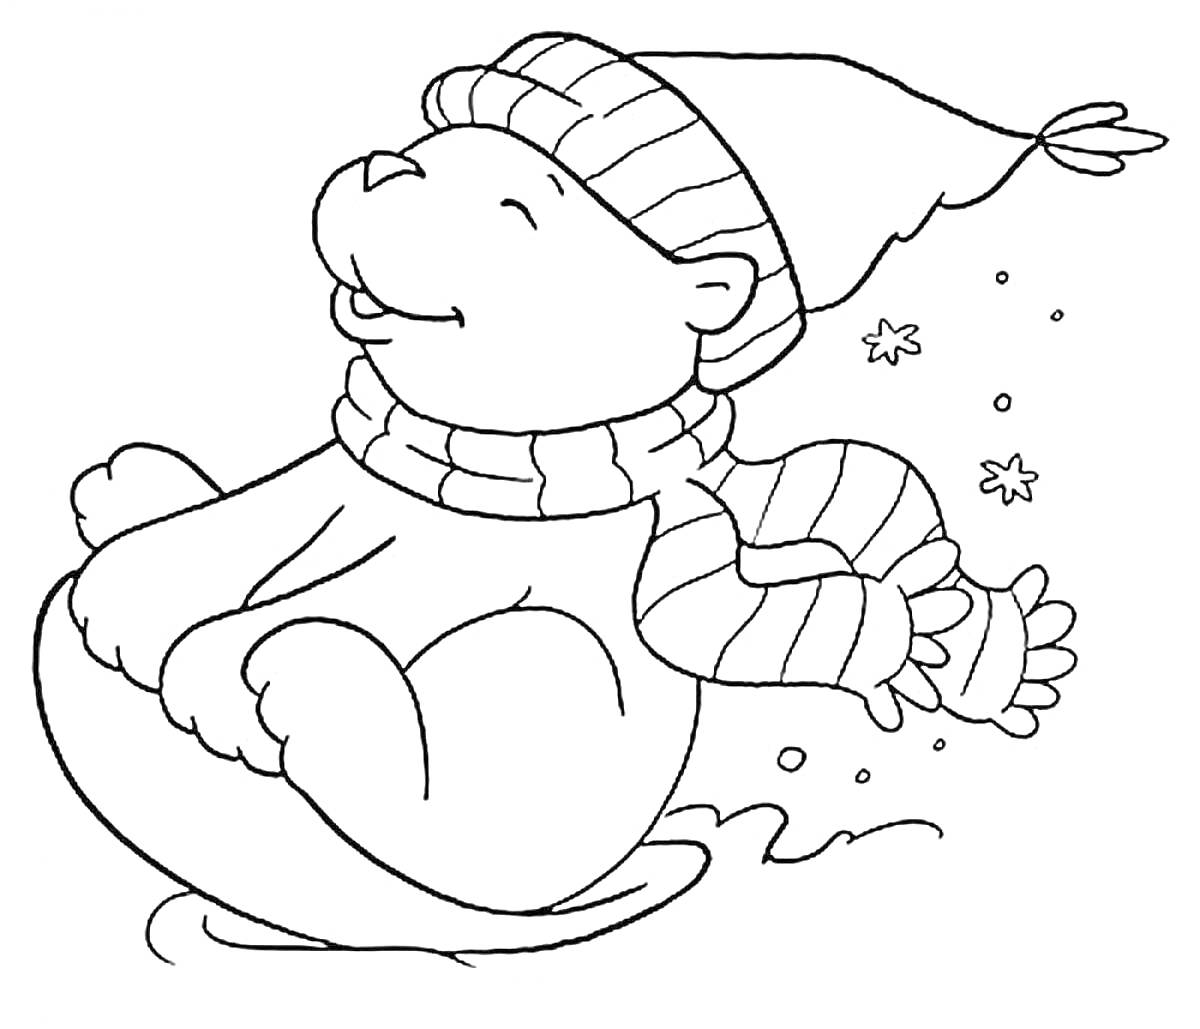 Медвежонок в шапке и шарфе катается на санках, снежинки на заднем плане